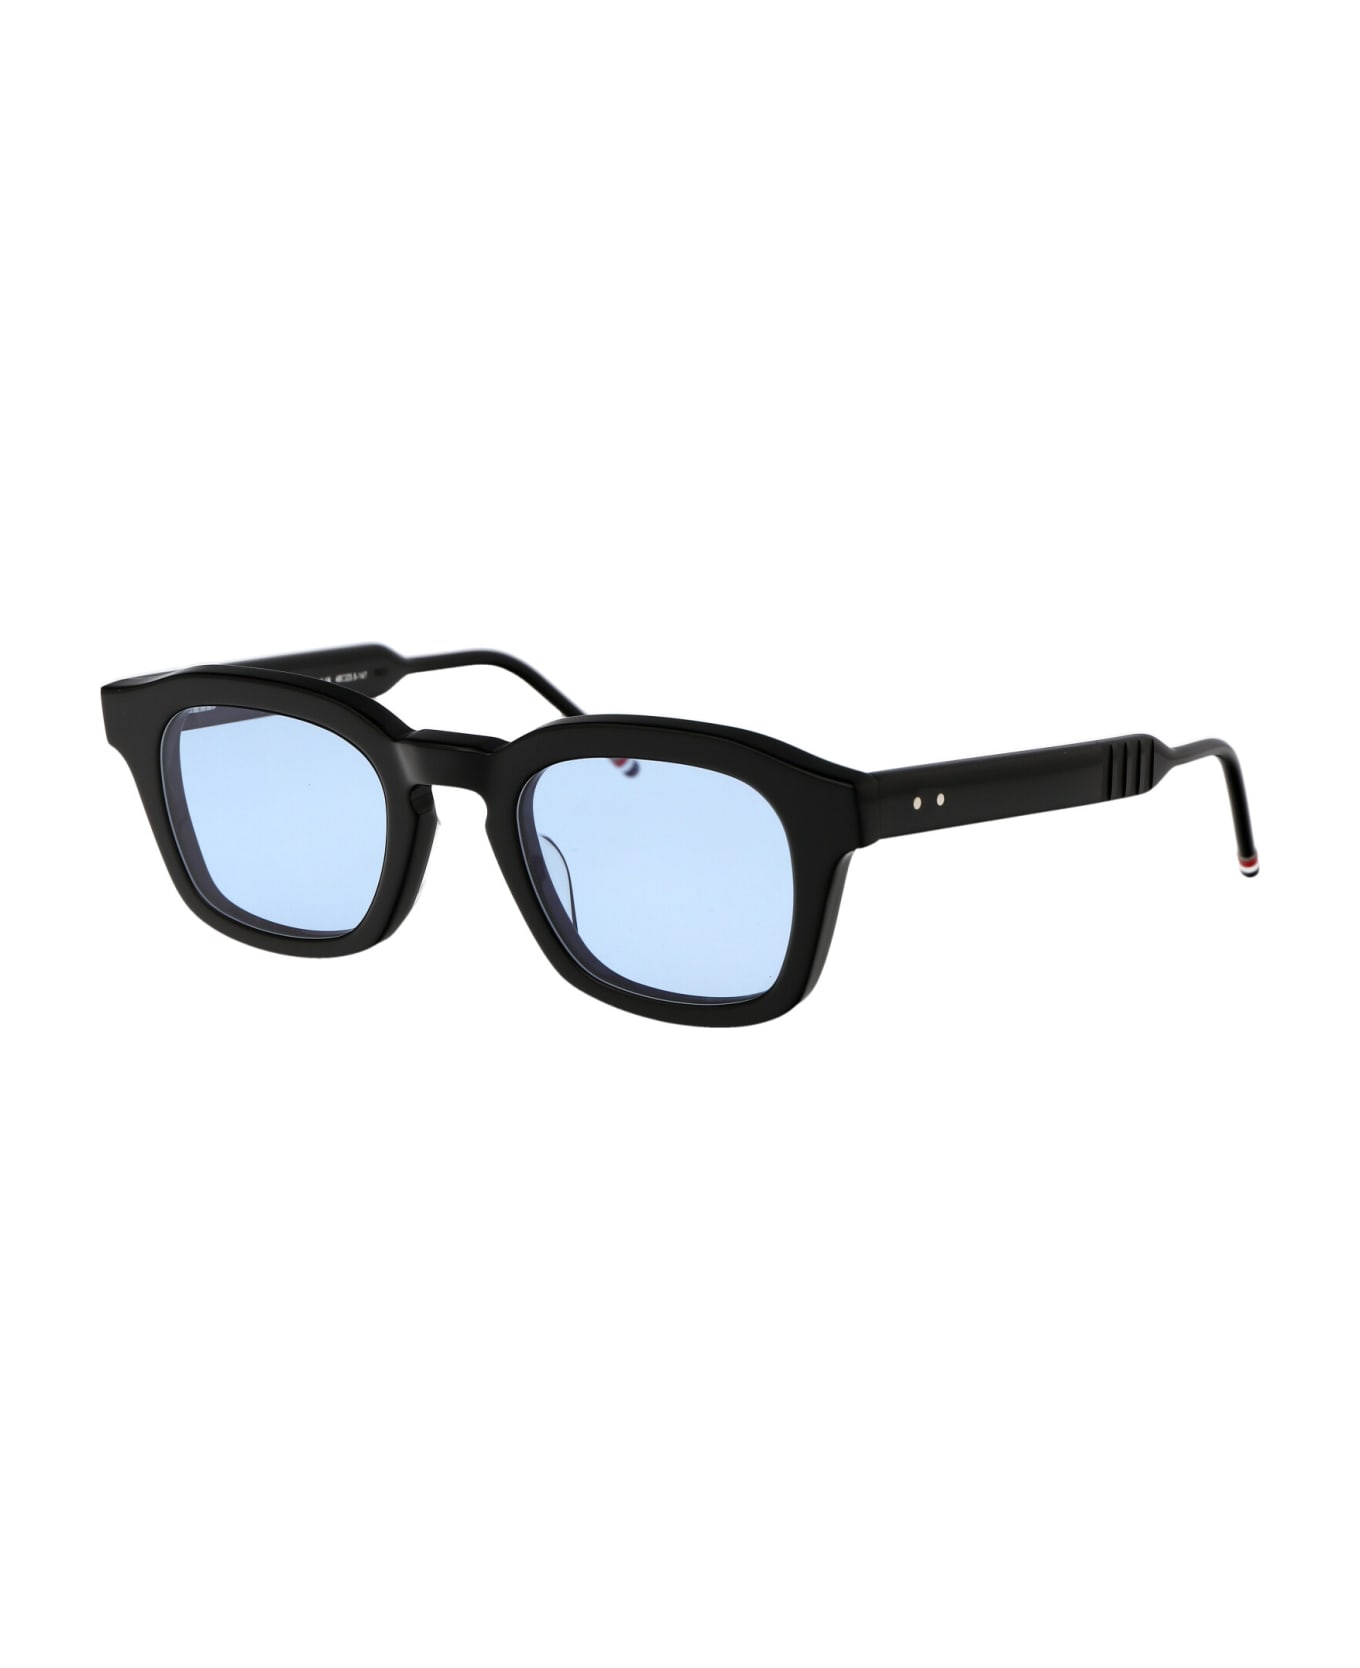 Thom Browne Ues412f-g0002-001-48 Sunglasses - 001 BLACK サングラス